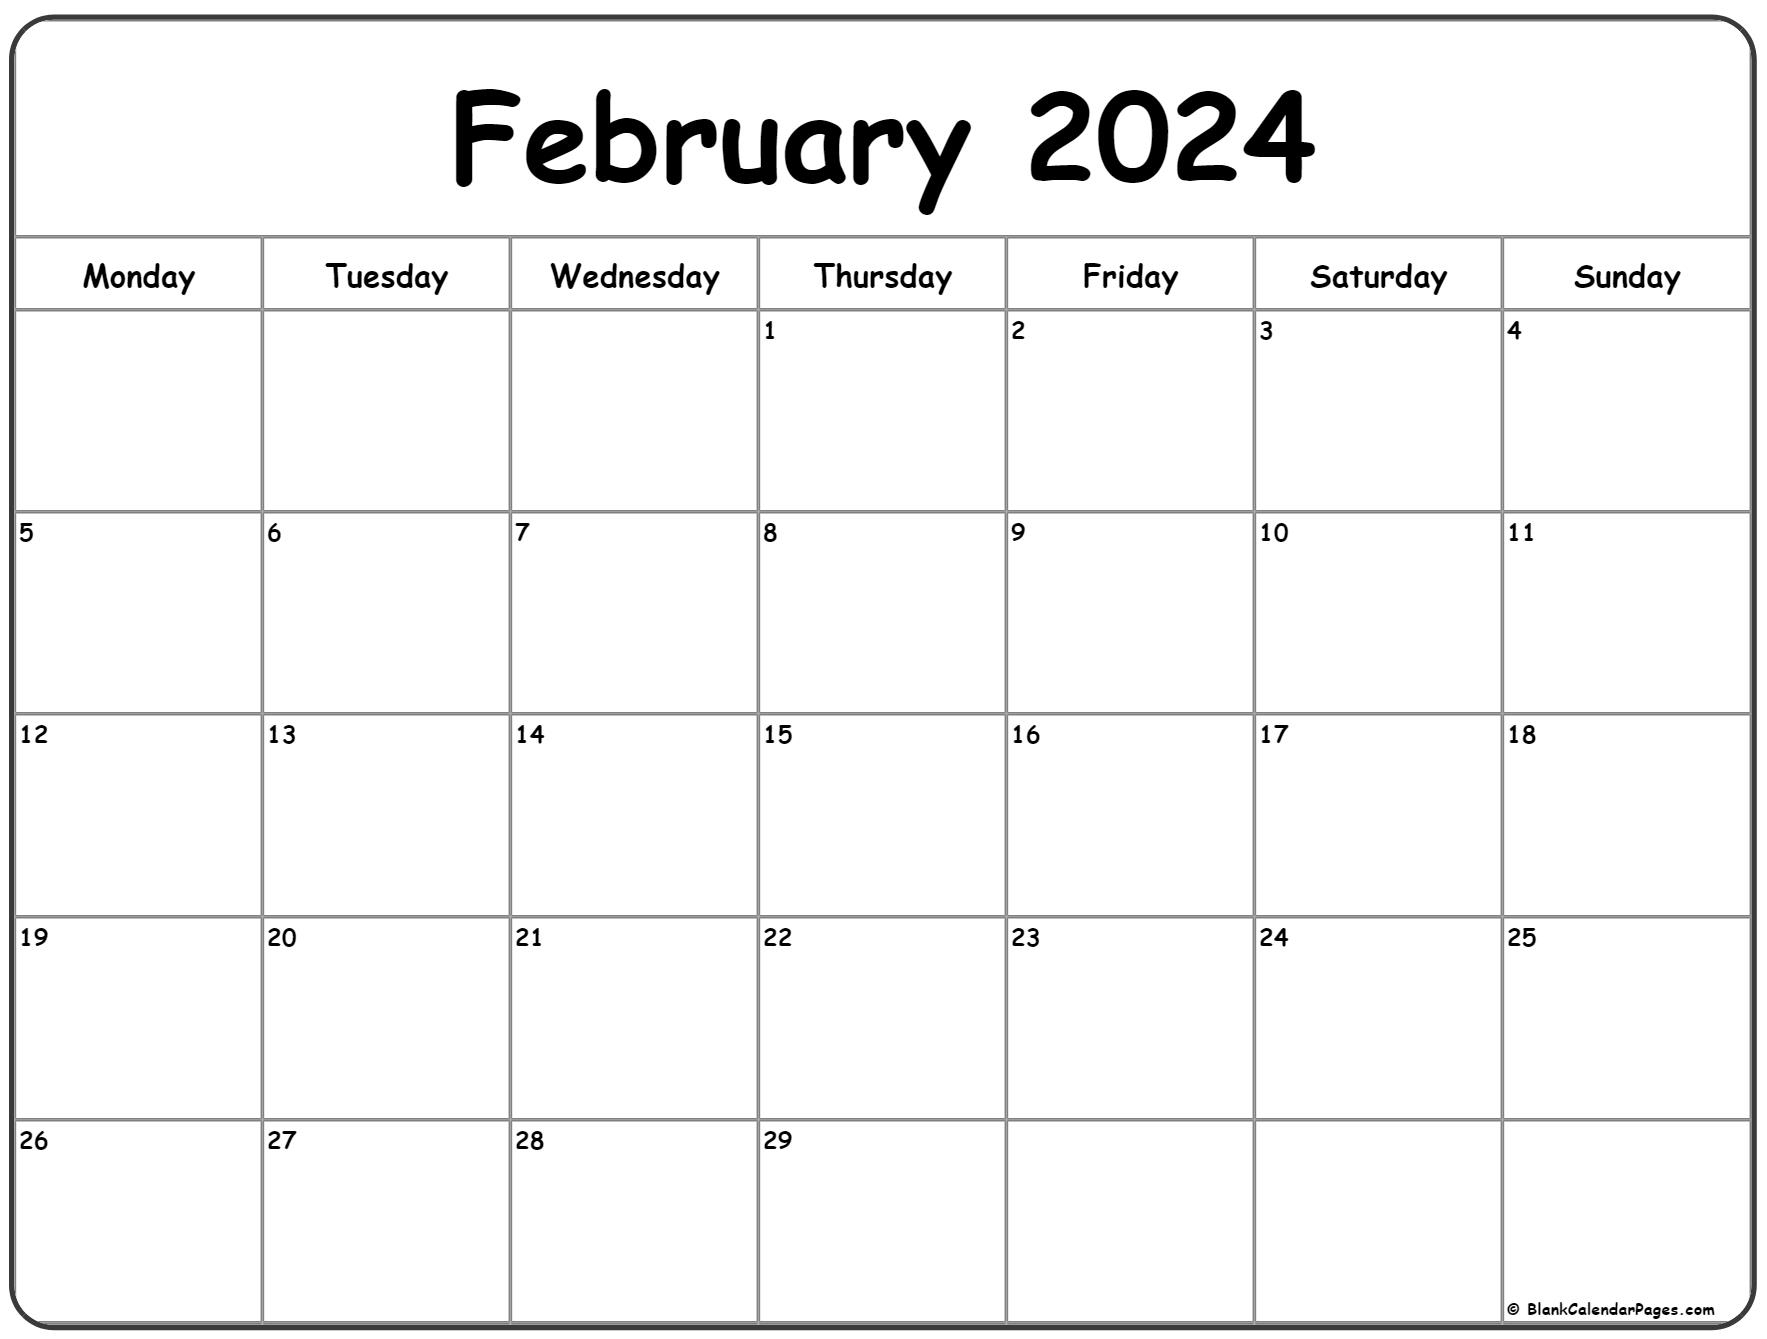 February 2024 Monday Calendar | Monday To Sunday for Printable Febuary 2024 Calendar